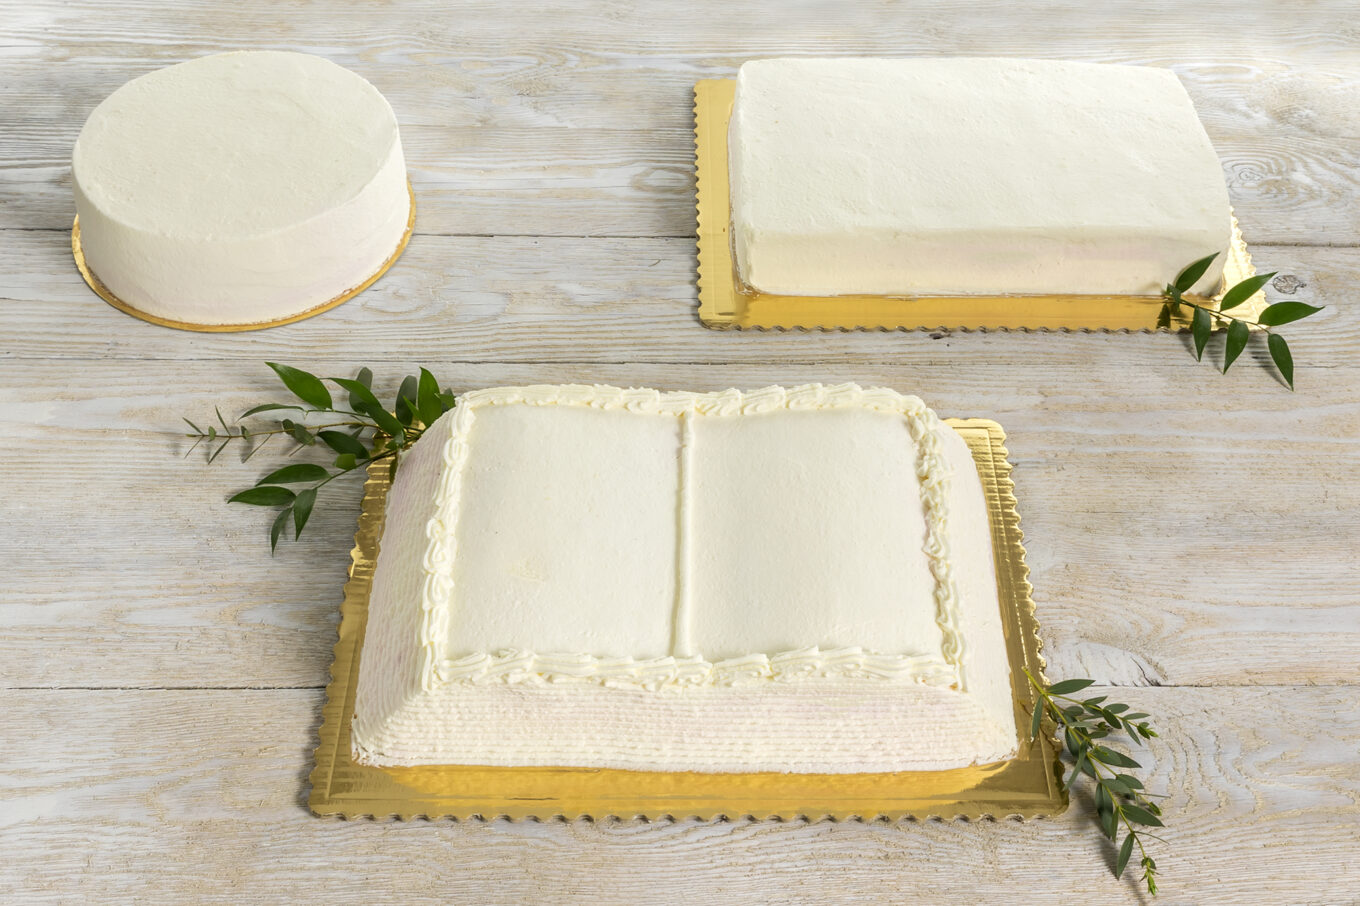 форми для тортів Cukiernia Jacek Placek є синонімом смаку домашньої випічки з натуральних продуктів.